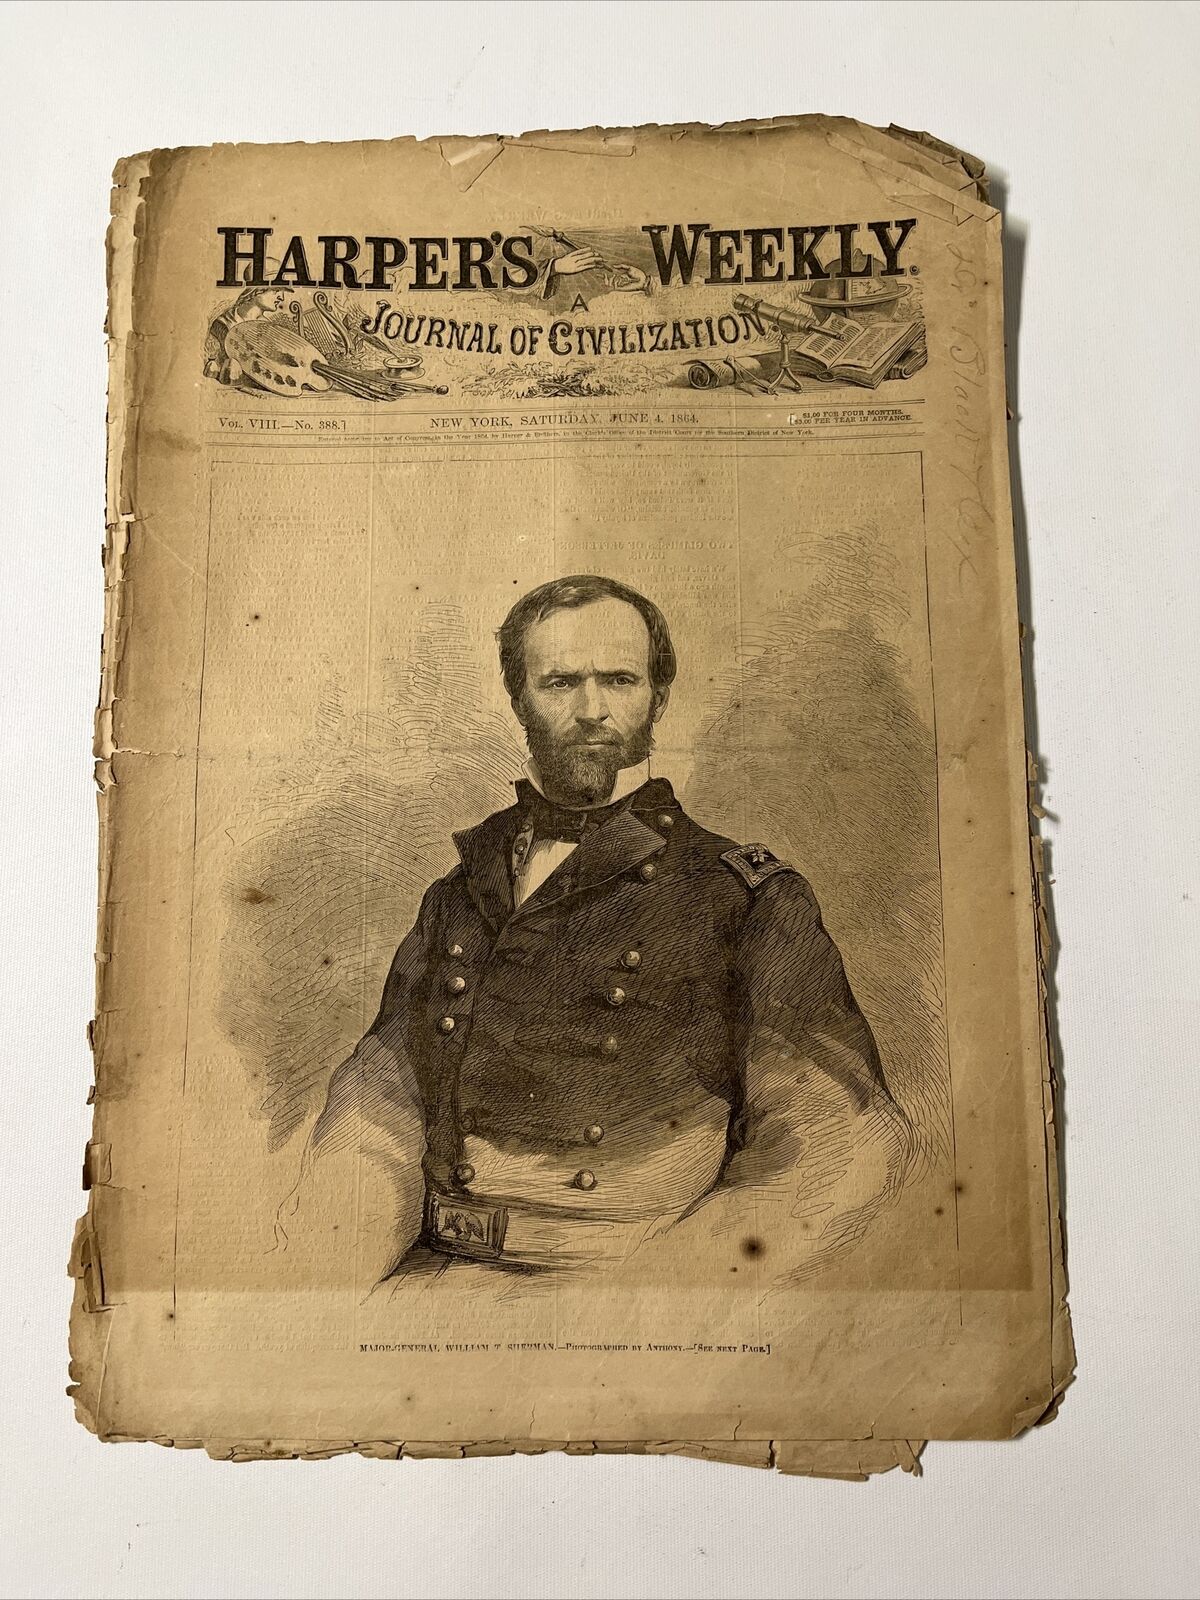 Original Harpers Weekly June 6/4/1864 Major General William T Sherman Civil War